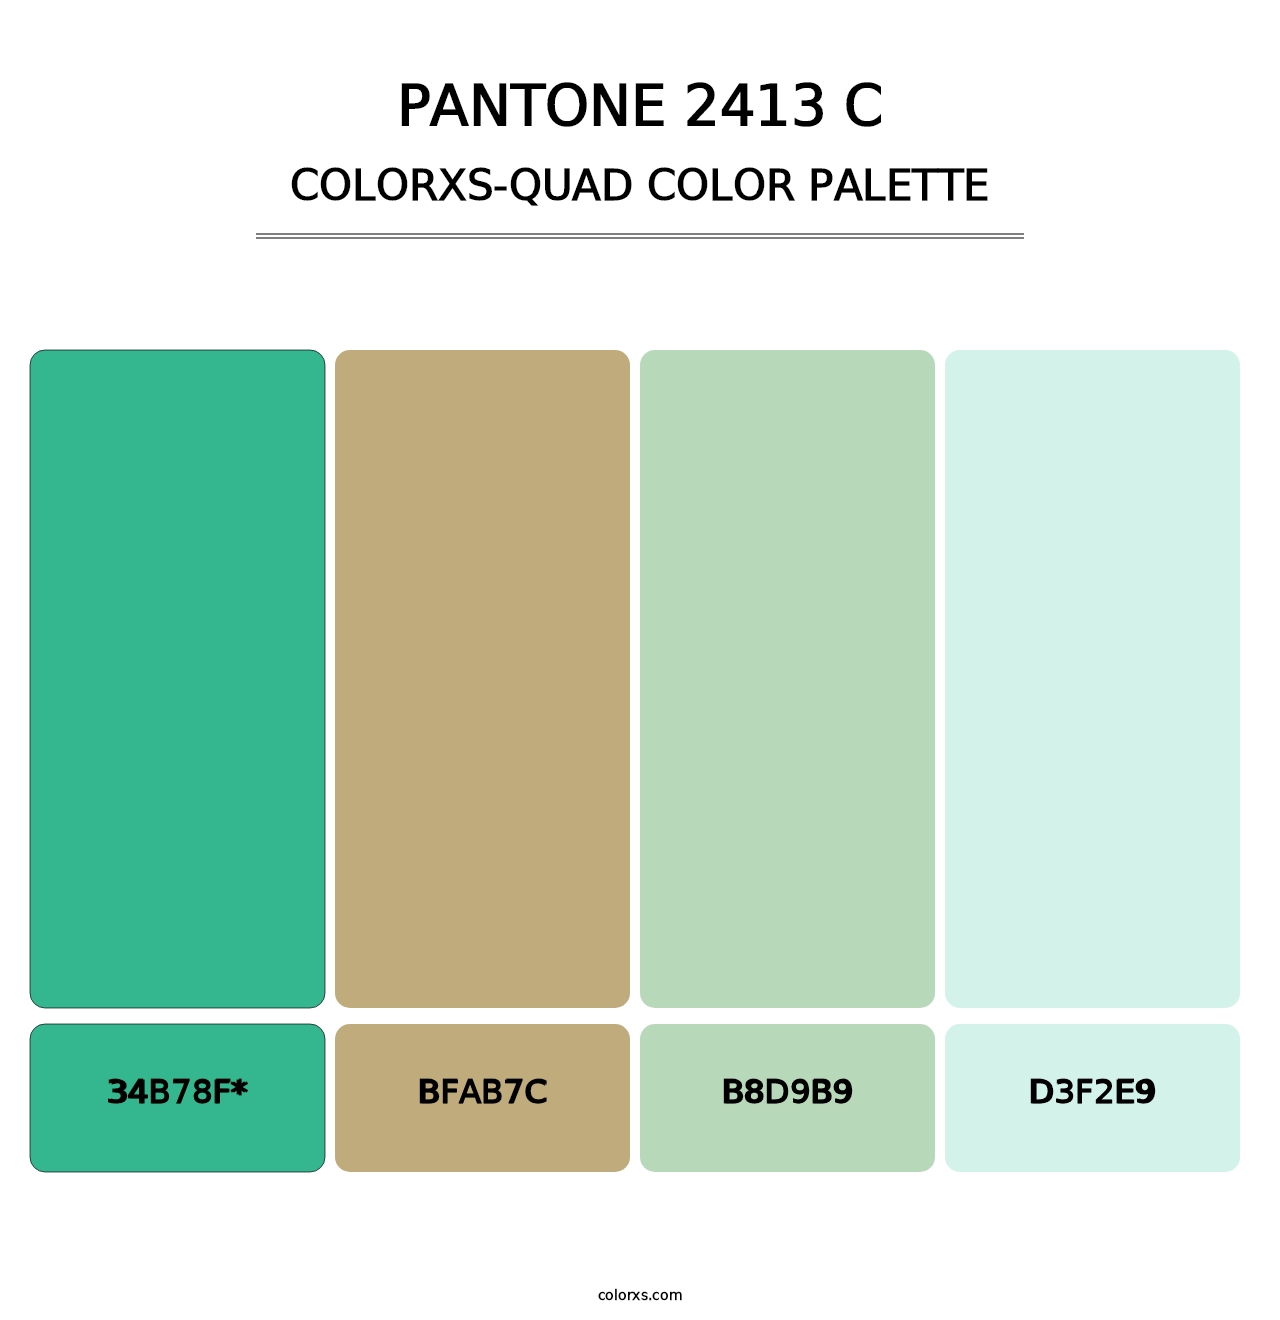 PANTONE 2413 C - Colorxs Quad Palette